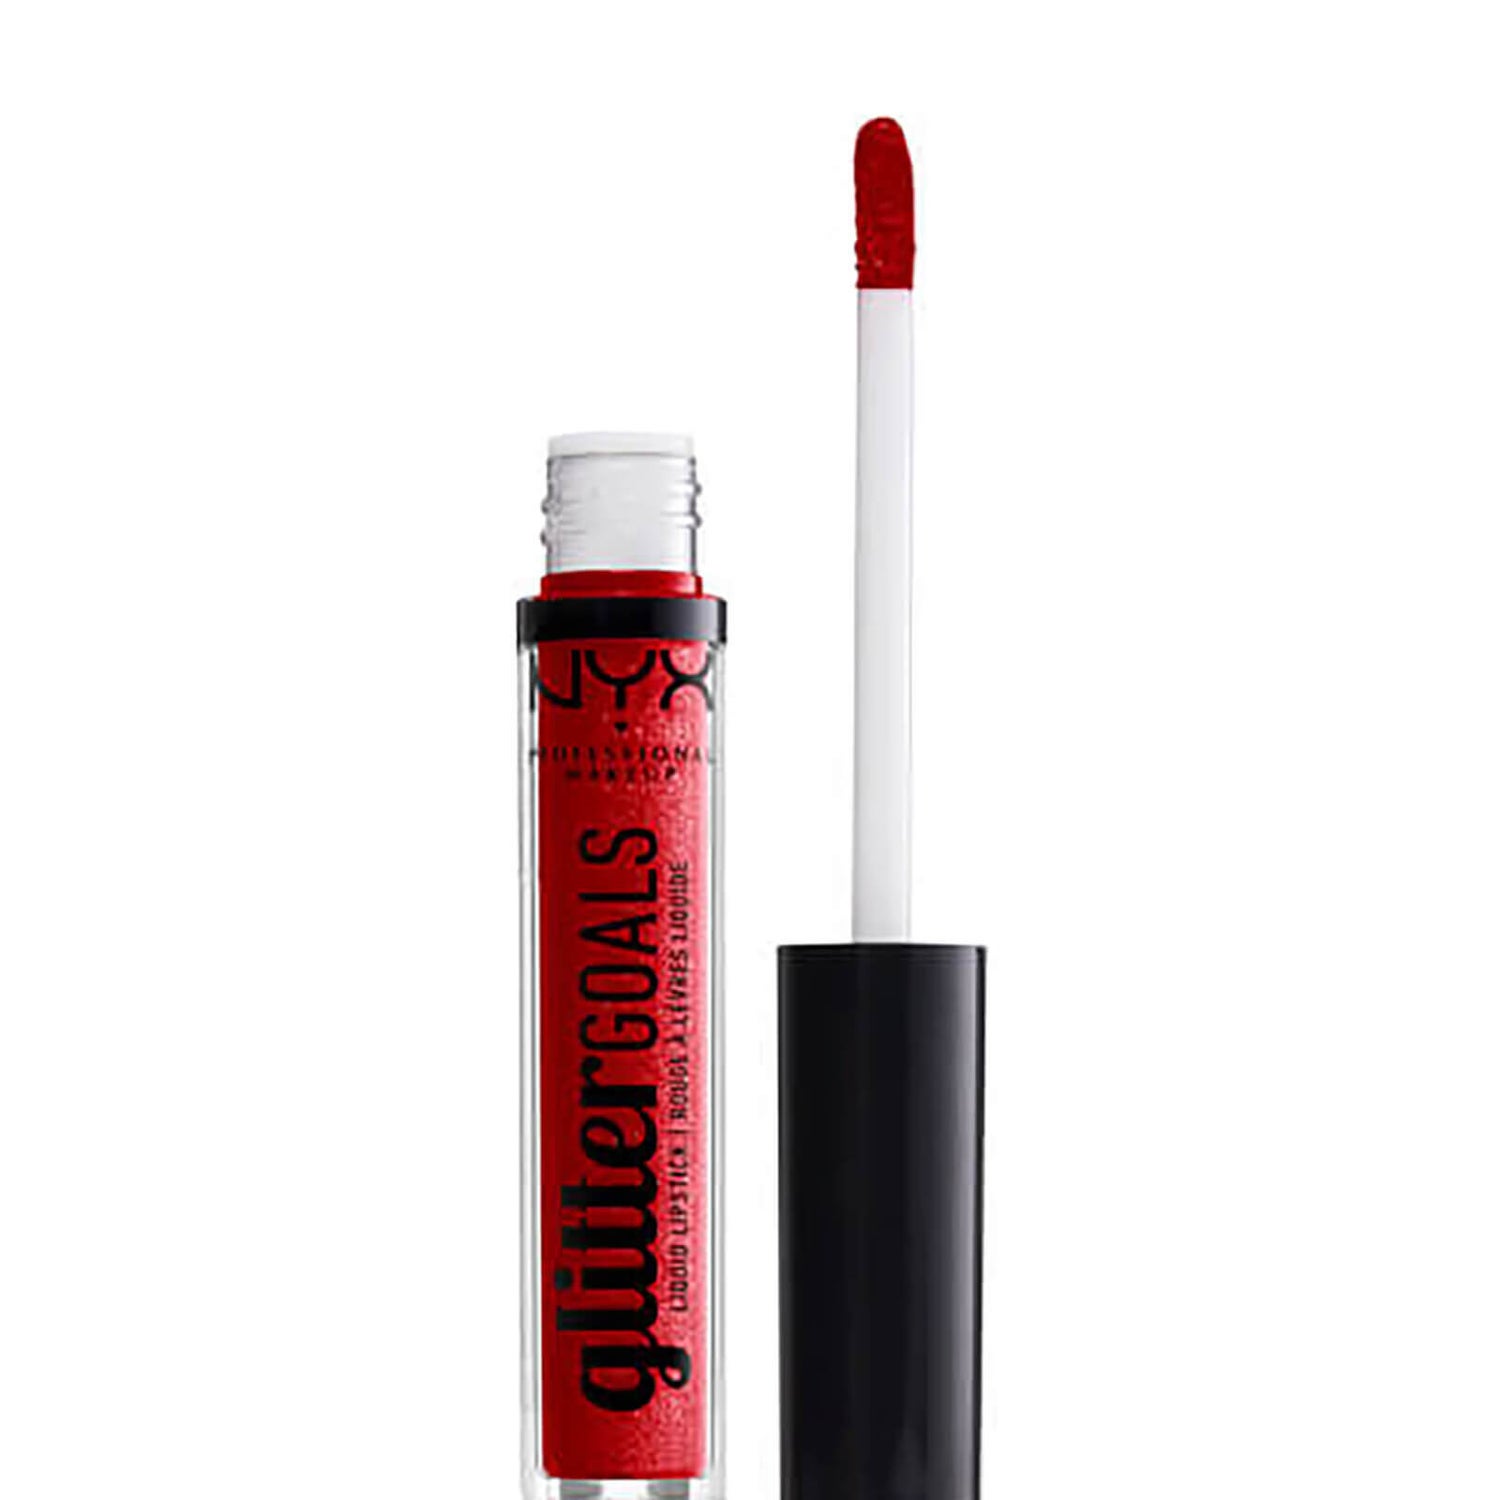 NYX Professional Makeup Glitter Goals Liquid Lipstick (Various Shades)